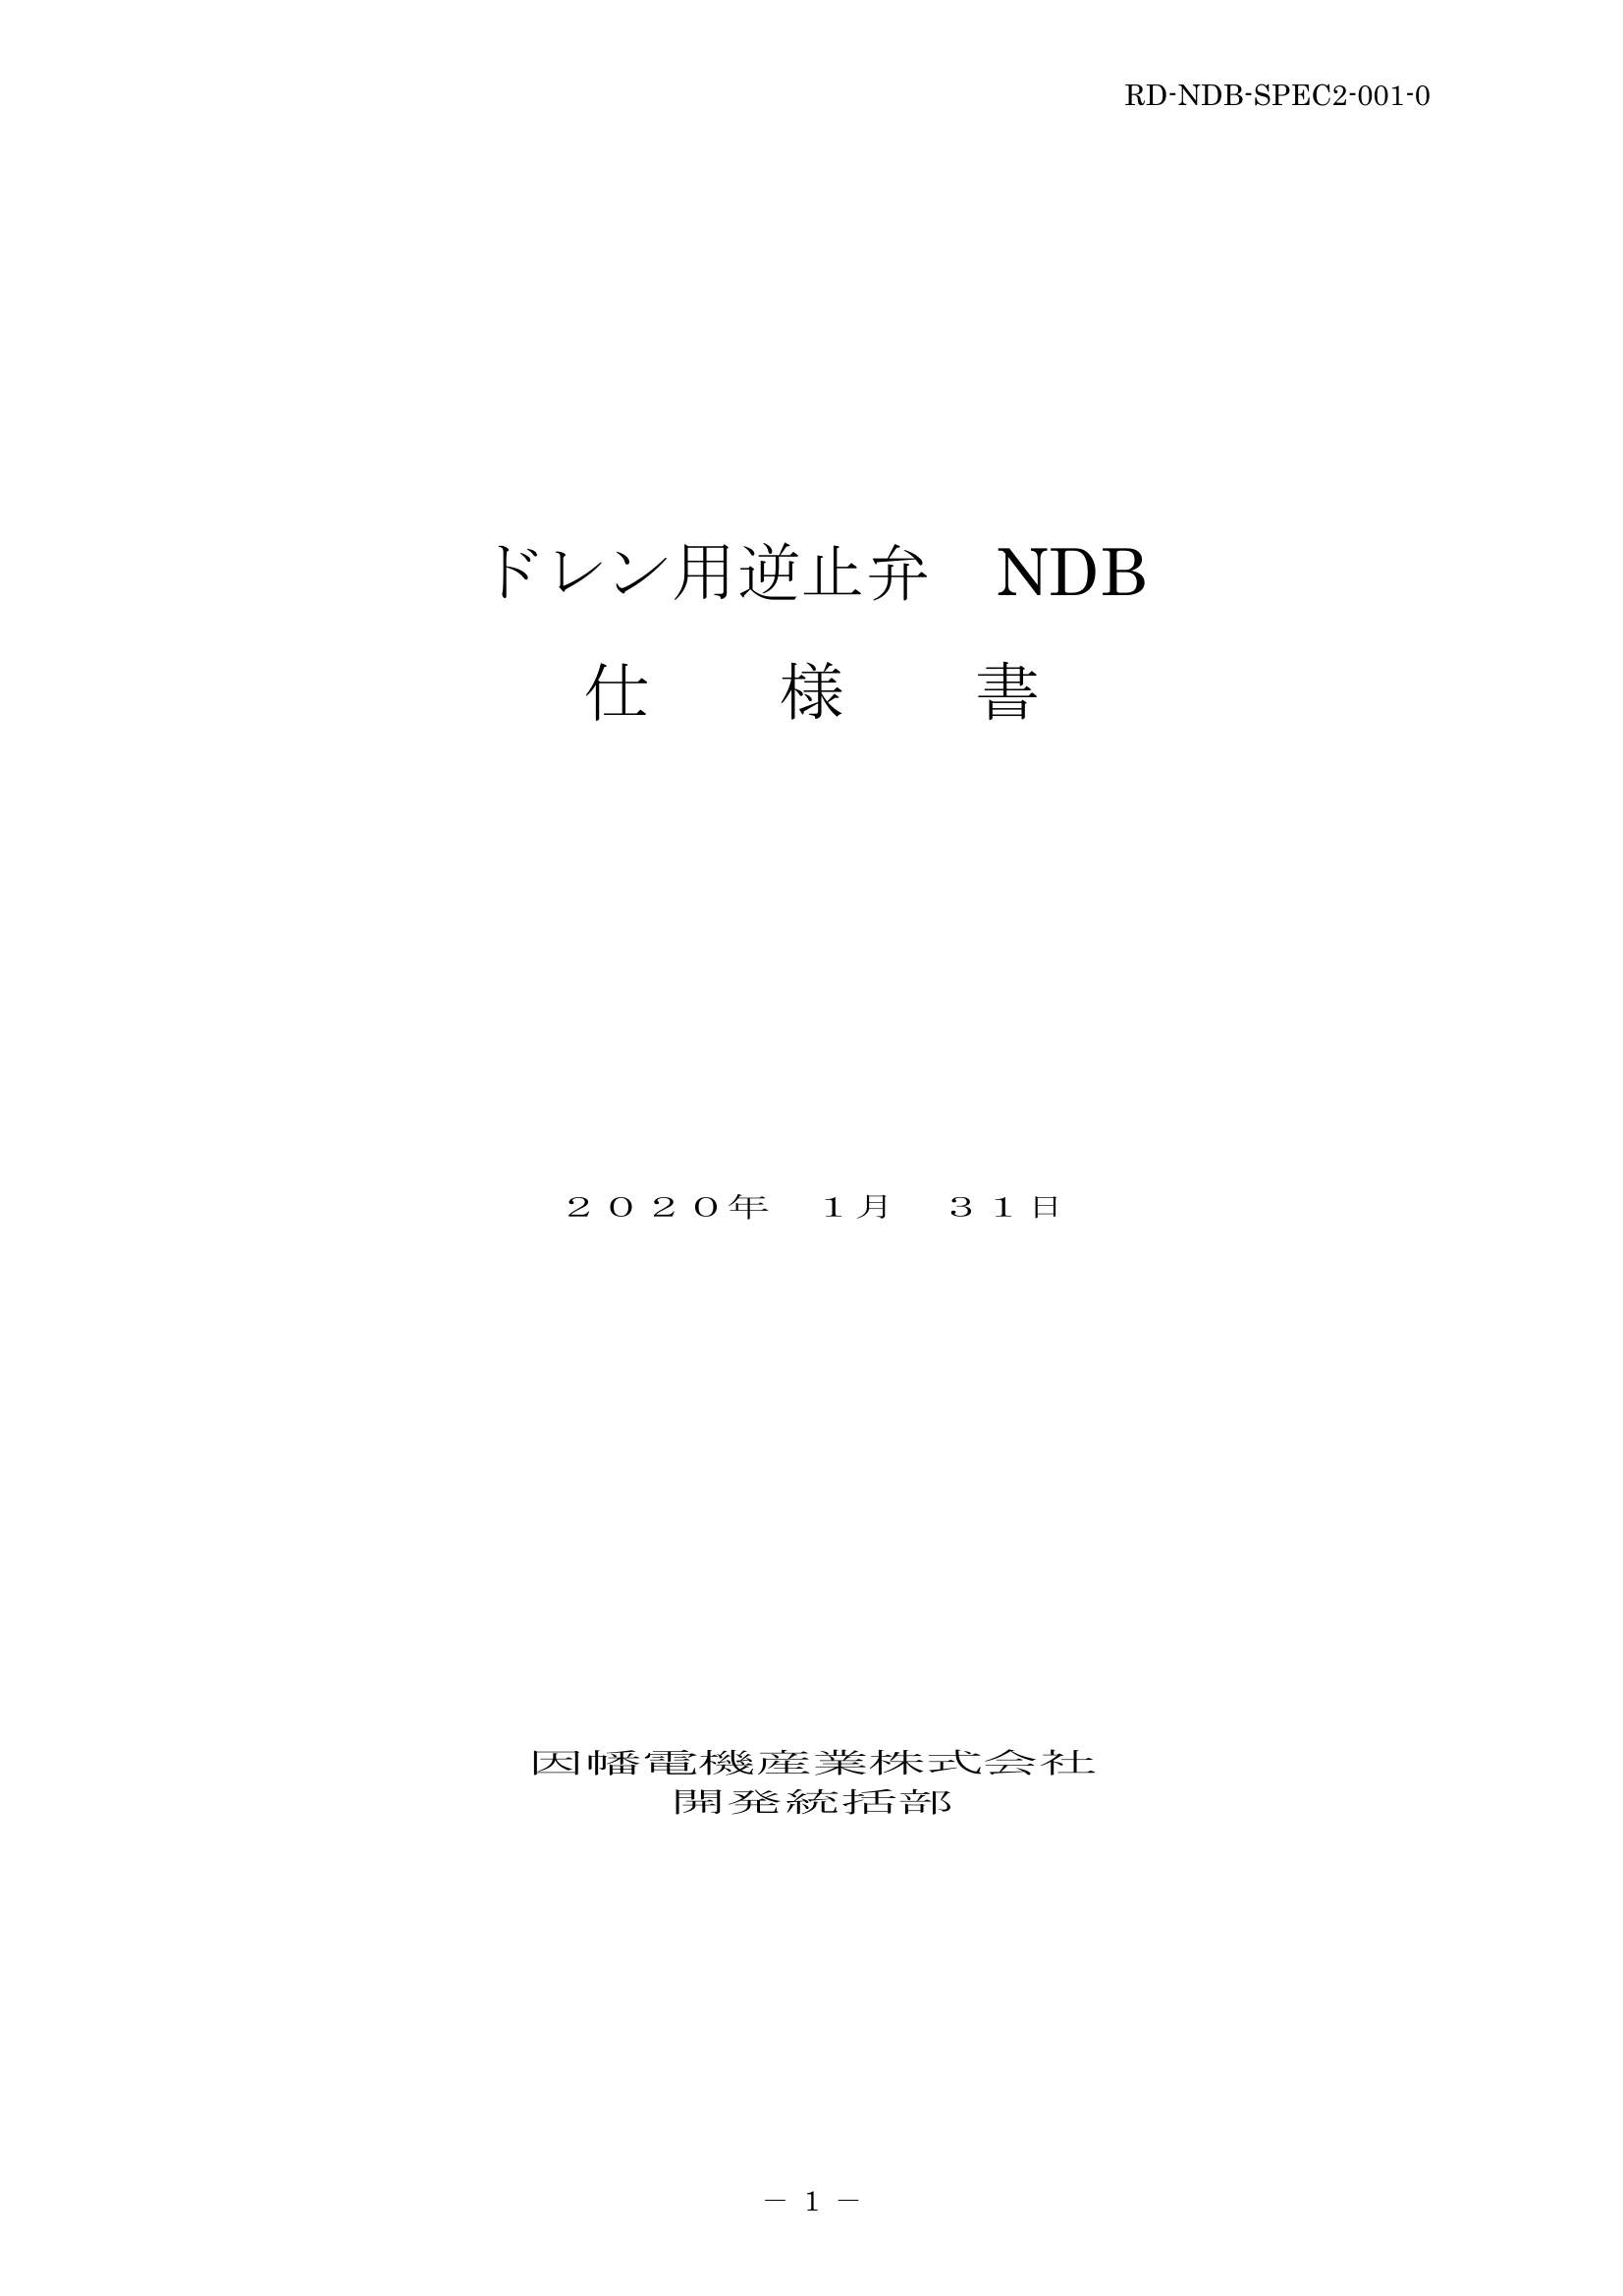 NDB_仕様書_20200131.pdf